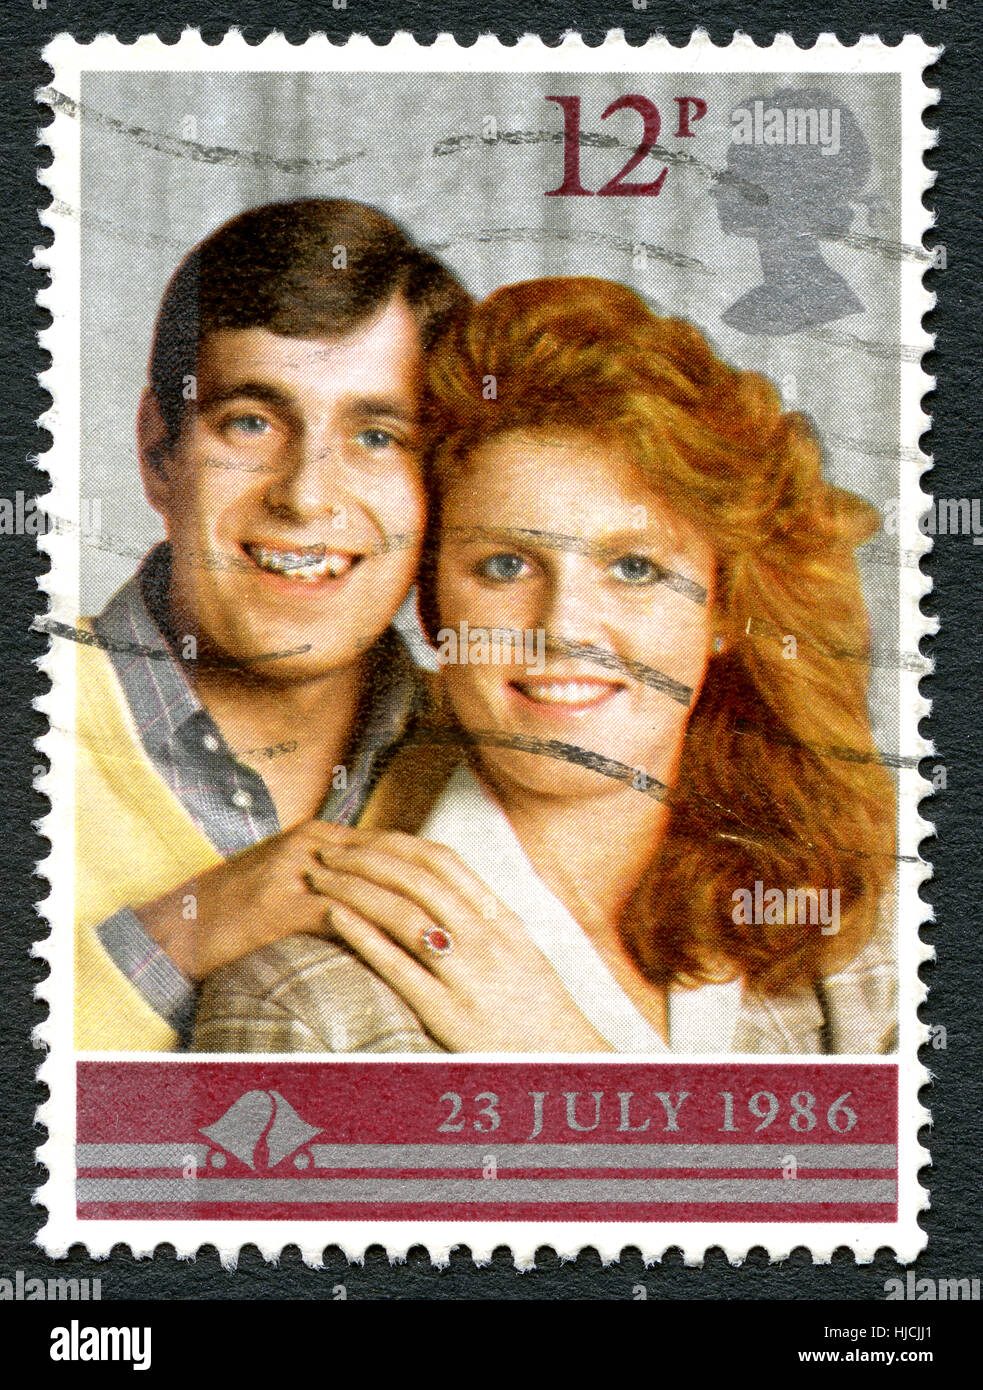 Grande-bretagne - VERS 1986 : un timbre-poste utilisé à partir du Royaume-Uni, pour célébrer le mariage du prince Andrew et Sarah Ferguson, vers 1986. Banque D'Images